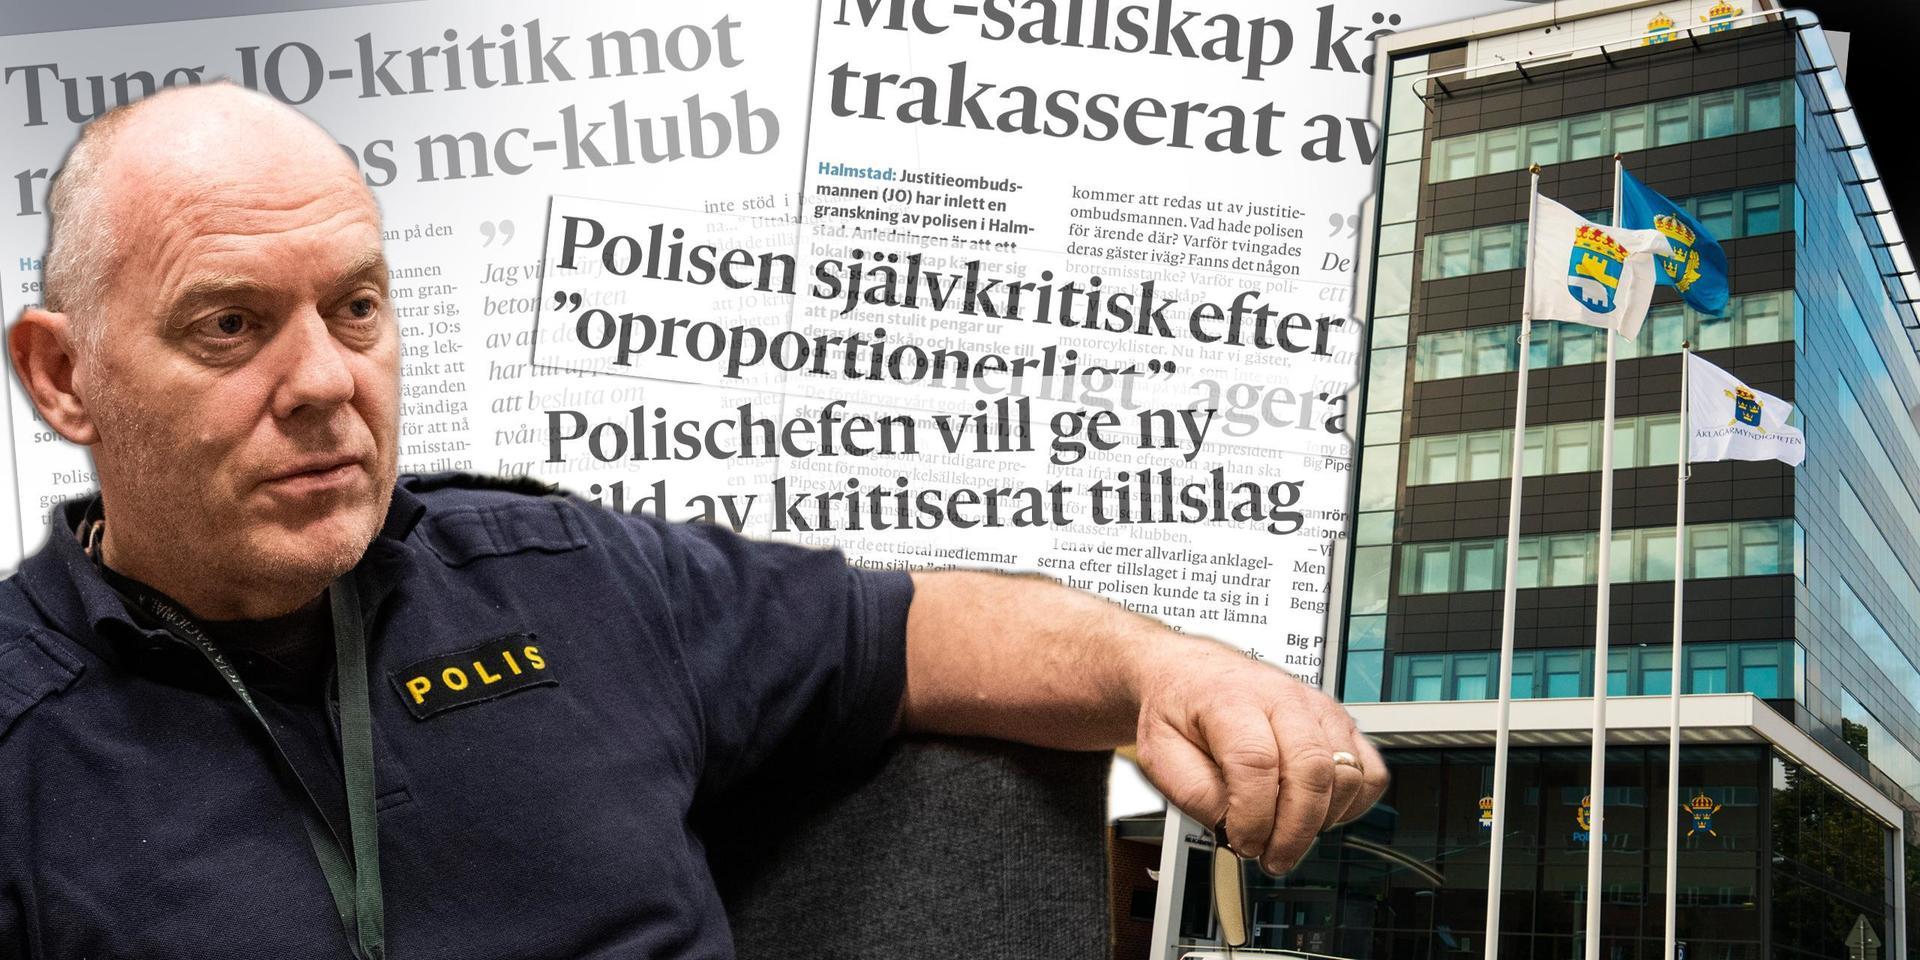 Justitieombudsmannens kritik mot Halmstadpolisen har väckt reaktioner. Polischef Mats Palmgren (bilden) tycker att kritiken är felaktig. En anonym anställd håller inte med - utan slår larm om tveksamma arbetsmetoder inom yrkeskåren.